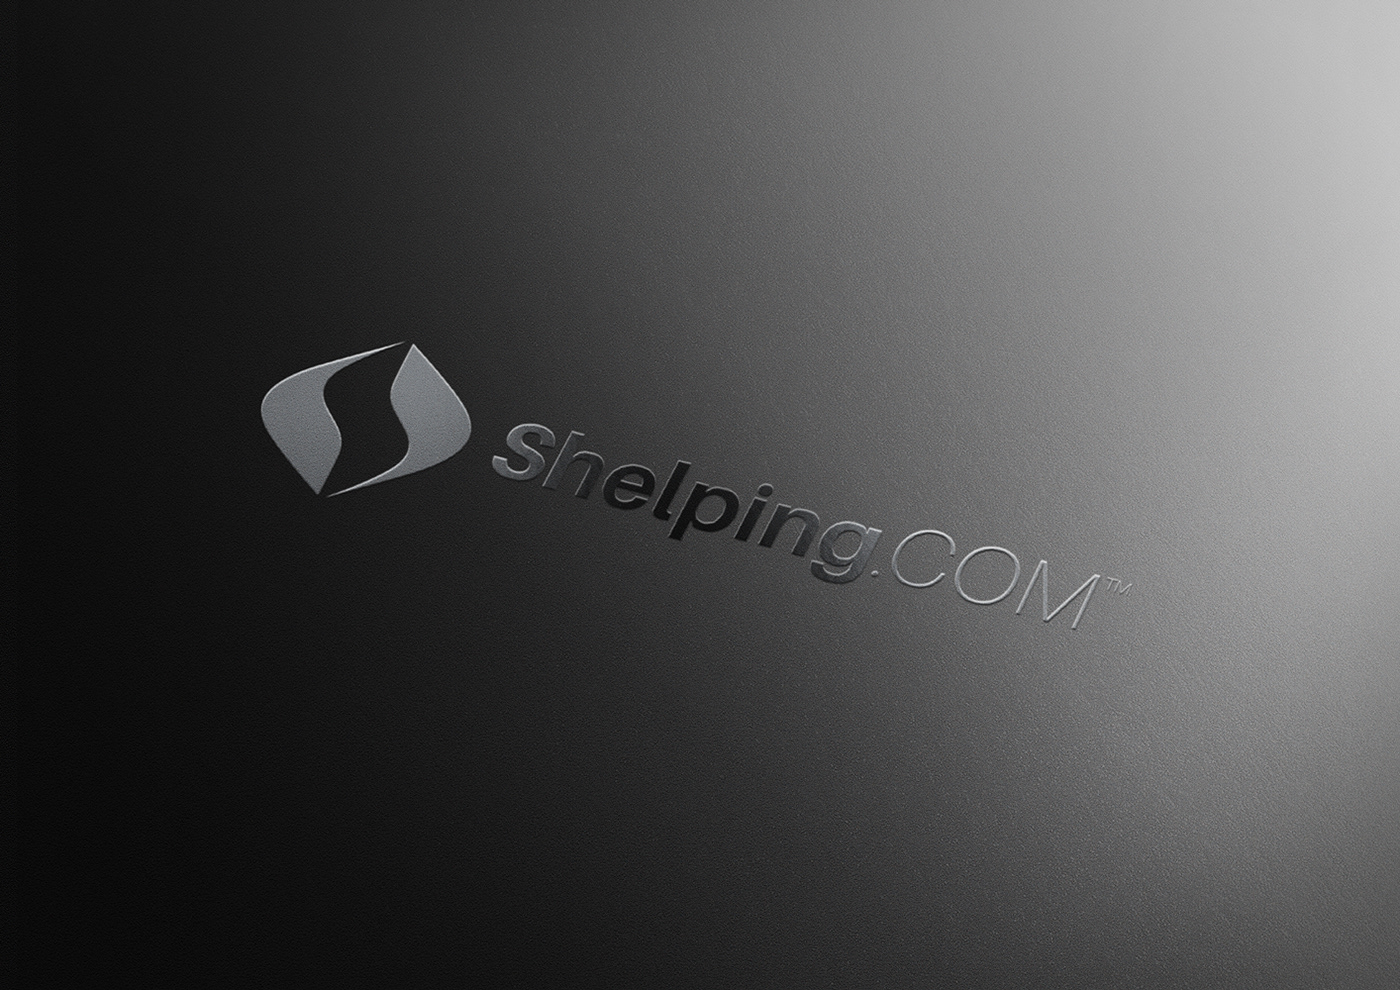 Shelping.com bold colorful minimalist elegant flexible shopisticated logo identity